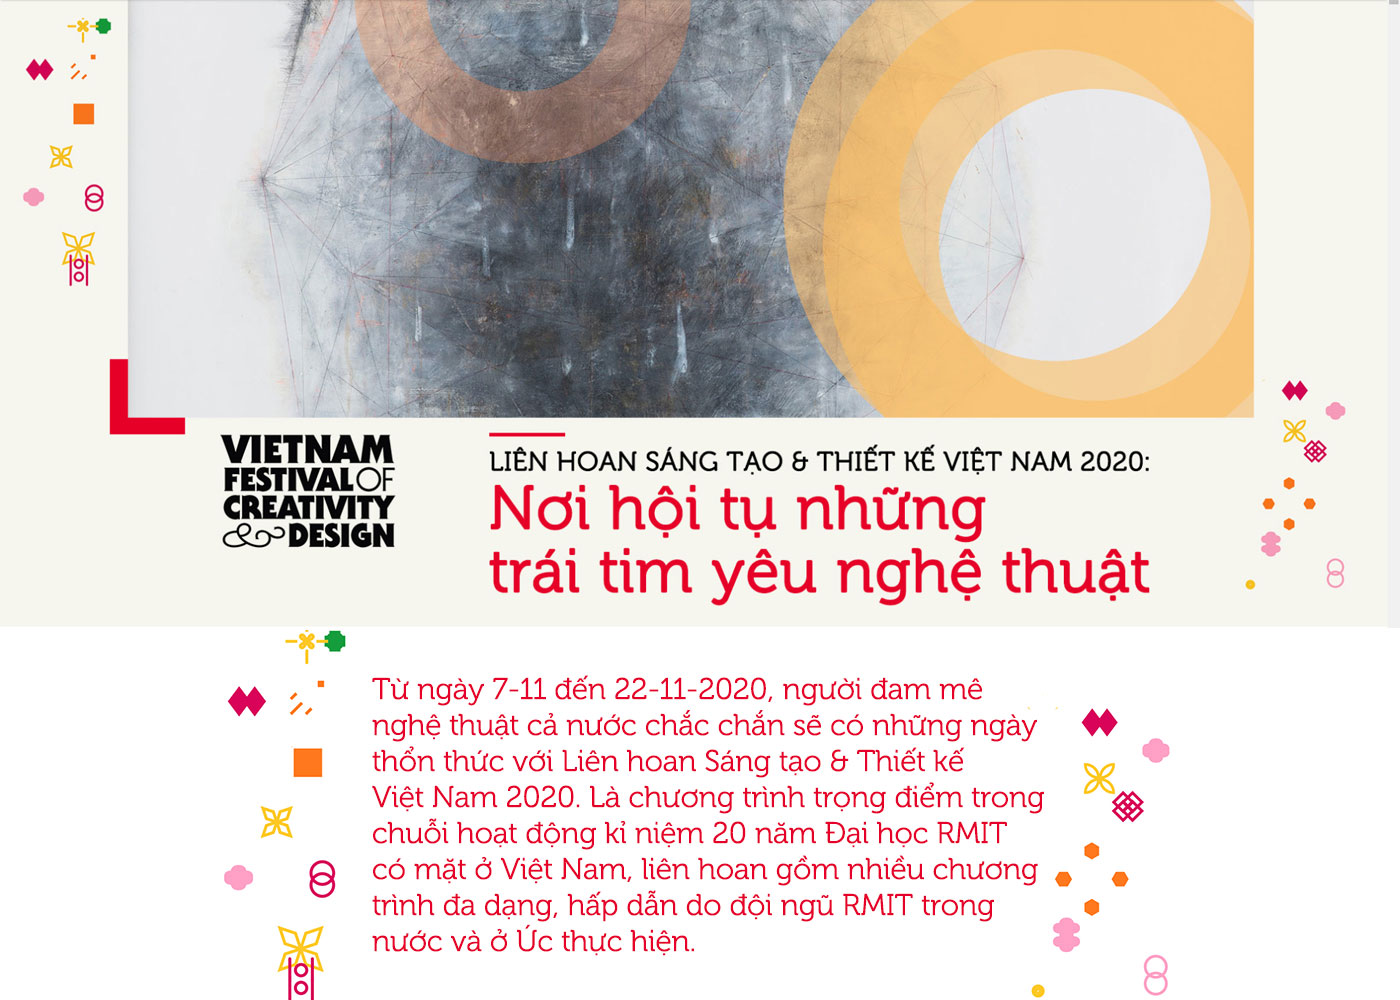 Liên hoan Sáng tạo & Thiết kế Việt Nam 2020 - Nơi hội tụ những trái tim yêu nghệ thuật - Ảnh 1